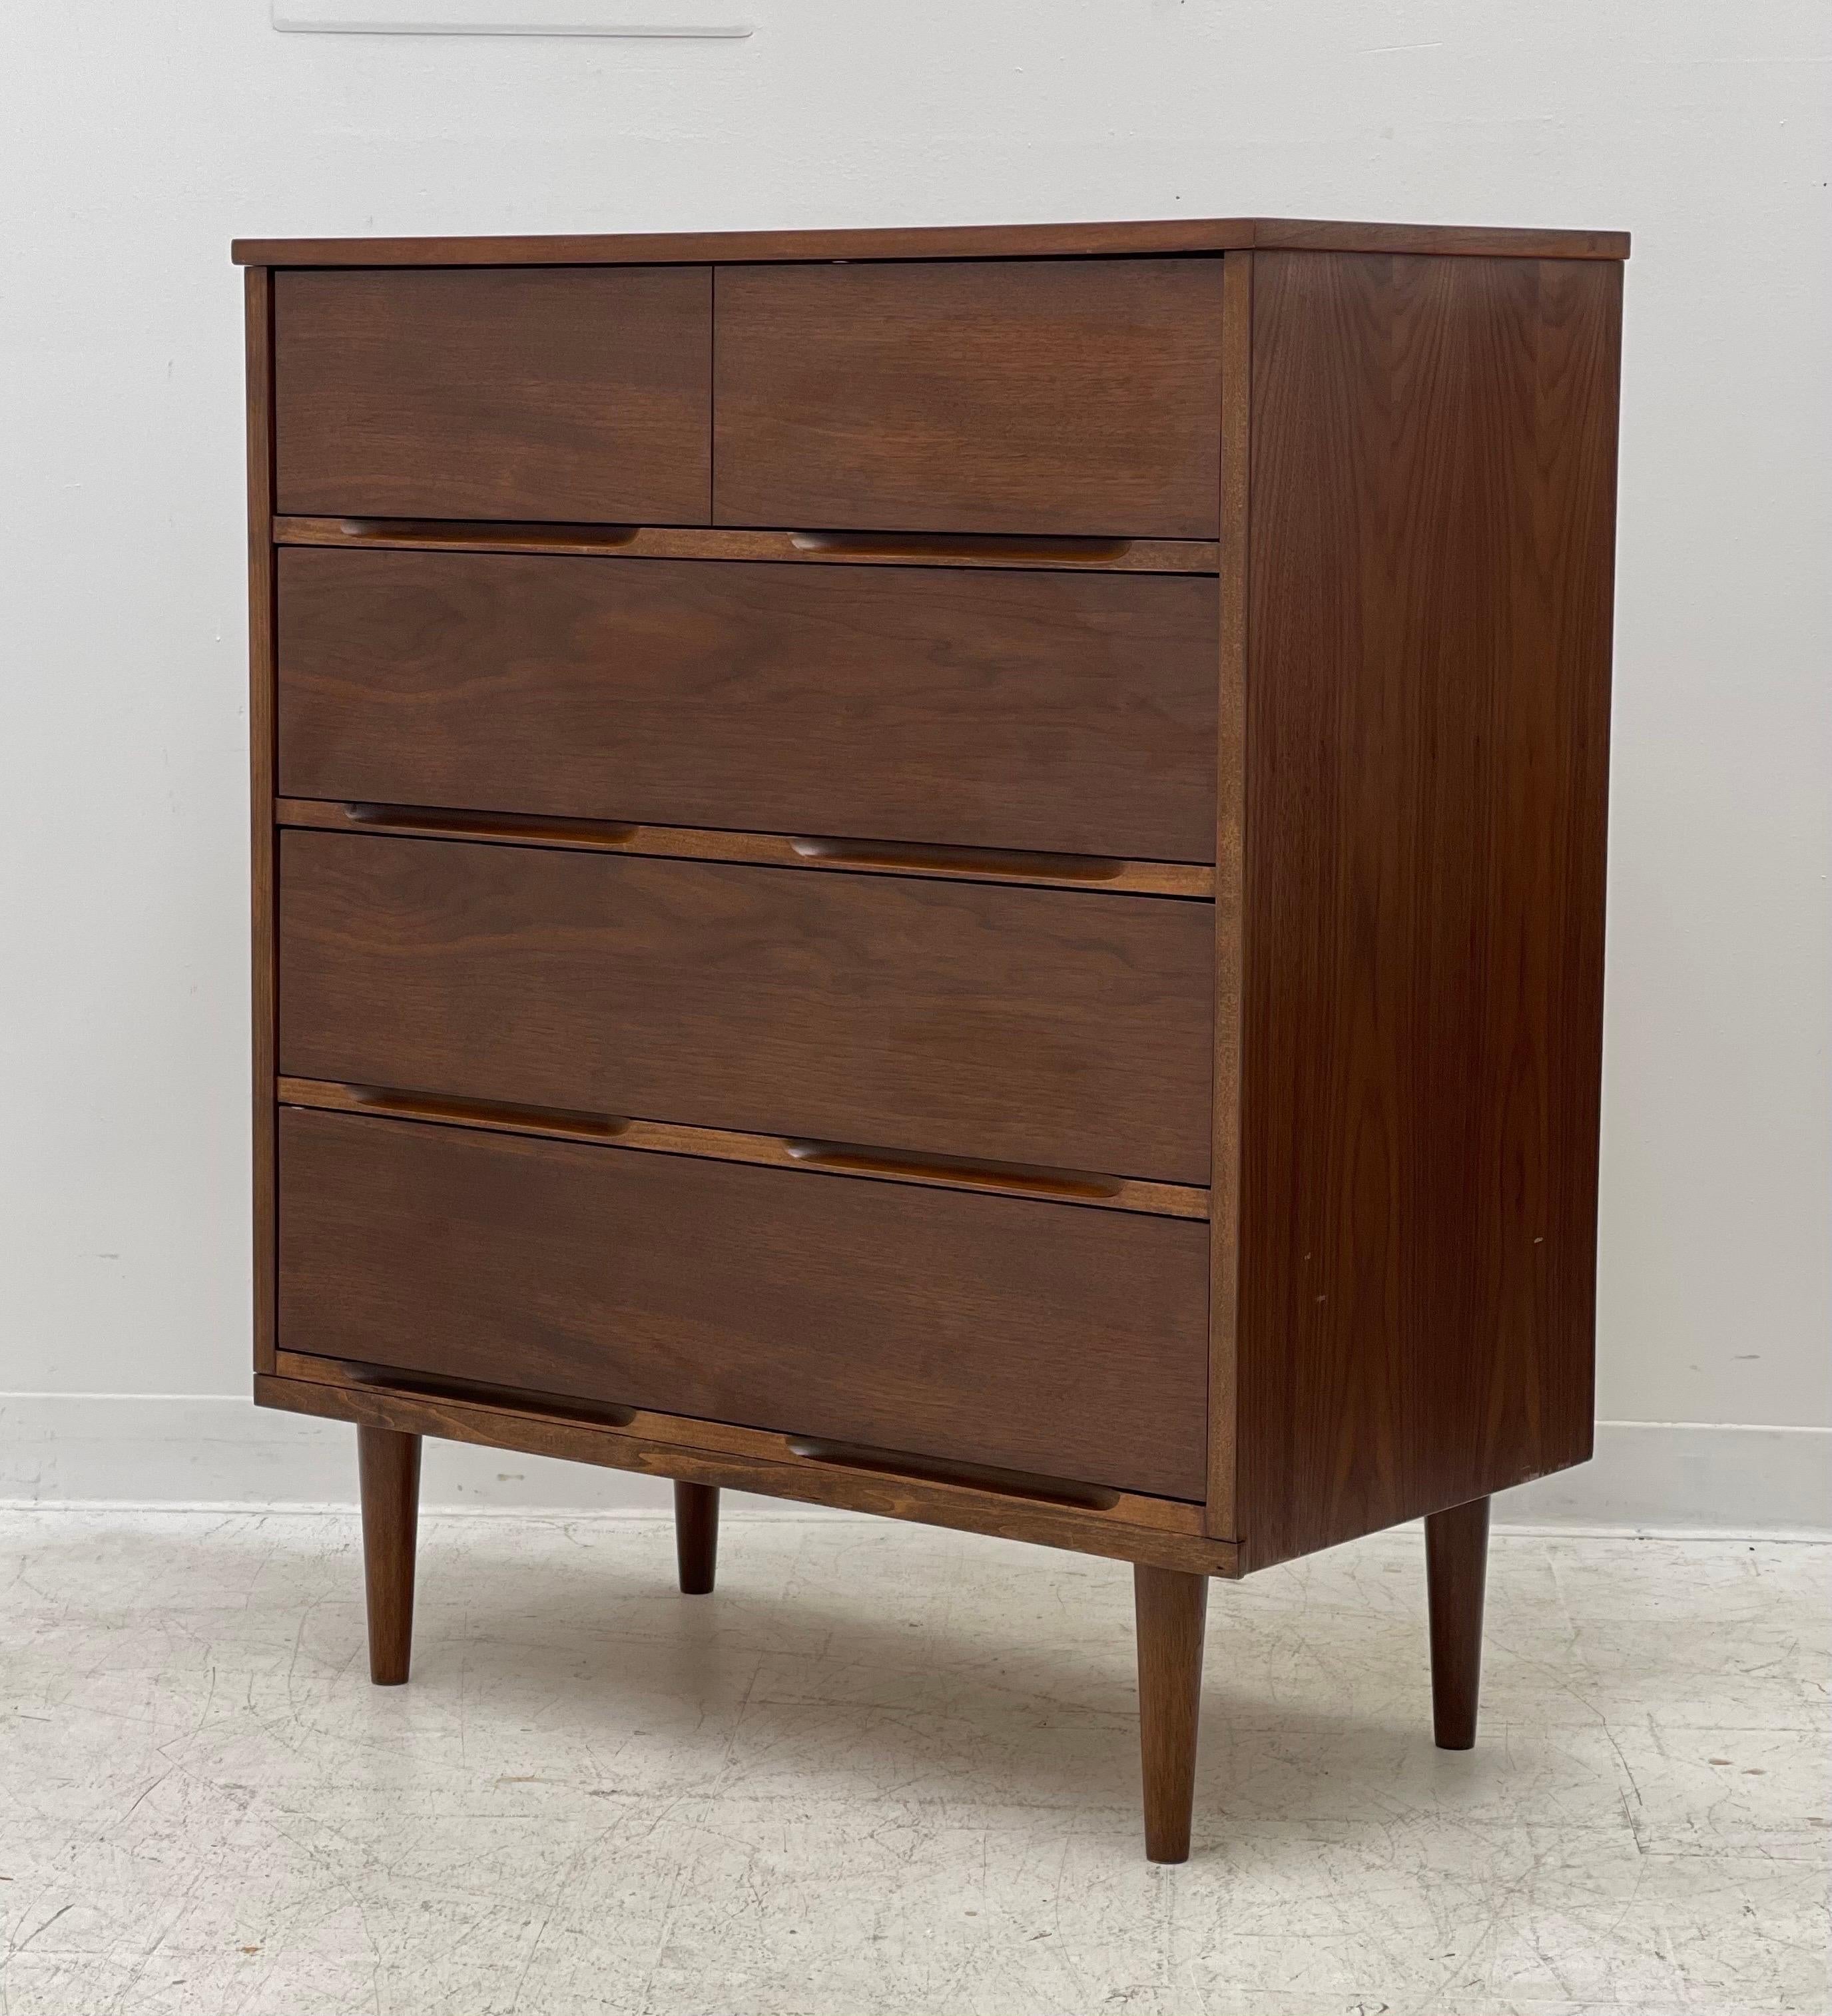 Mid-20th Century Vintage Mid-Century Modern Dresser Dovetail Drawers Cabinet Storage